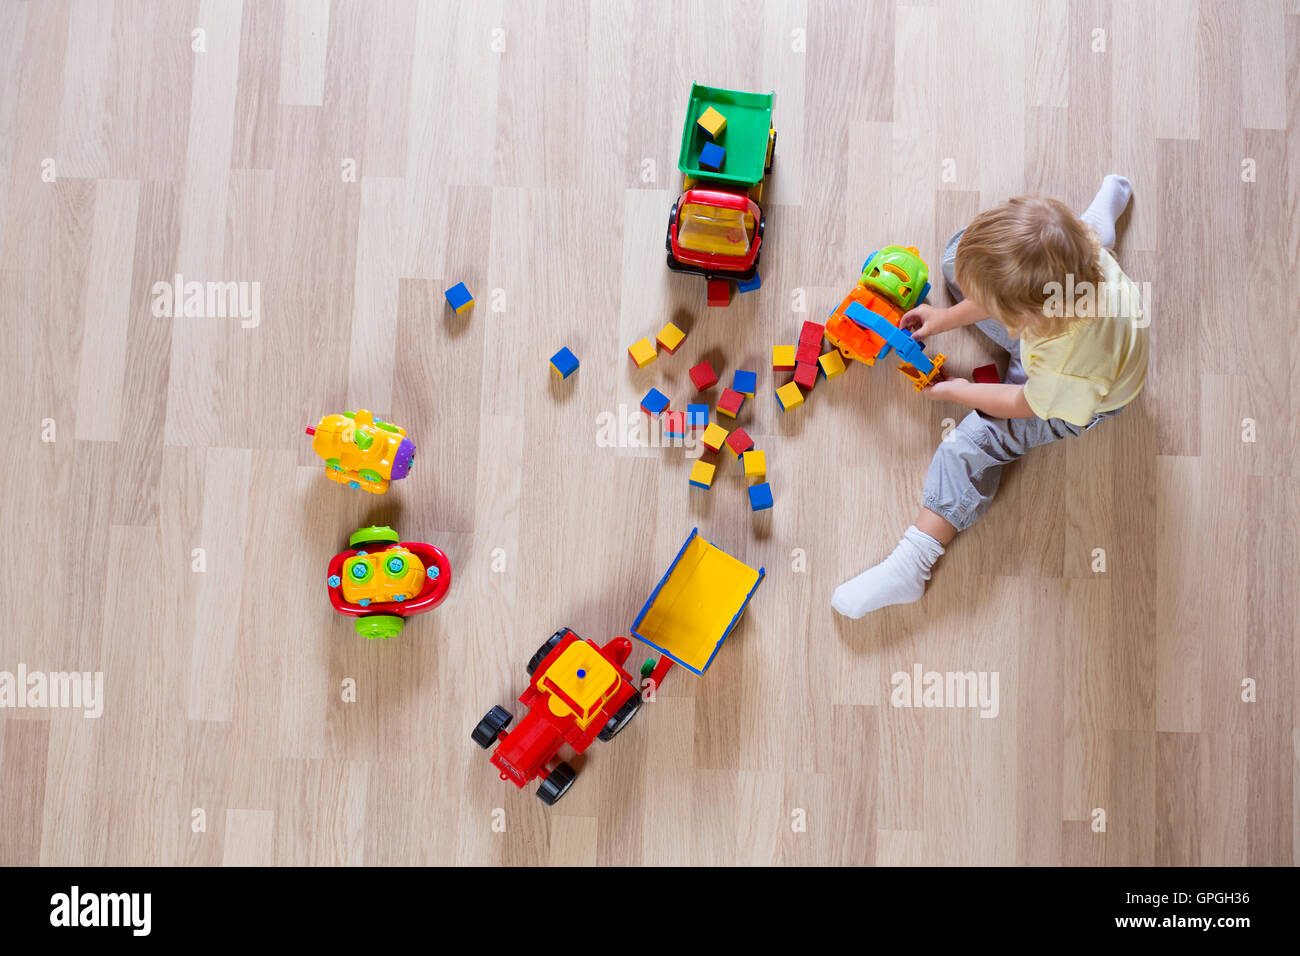 Petite blonde jeune garçon jouant avec des jouets de voiture sur marbre vue supérieure Banque D'Images